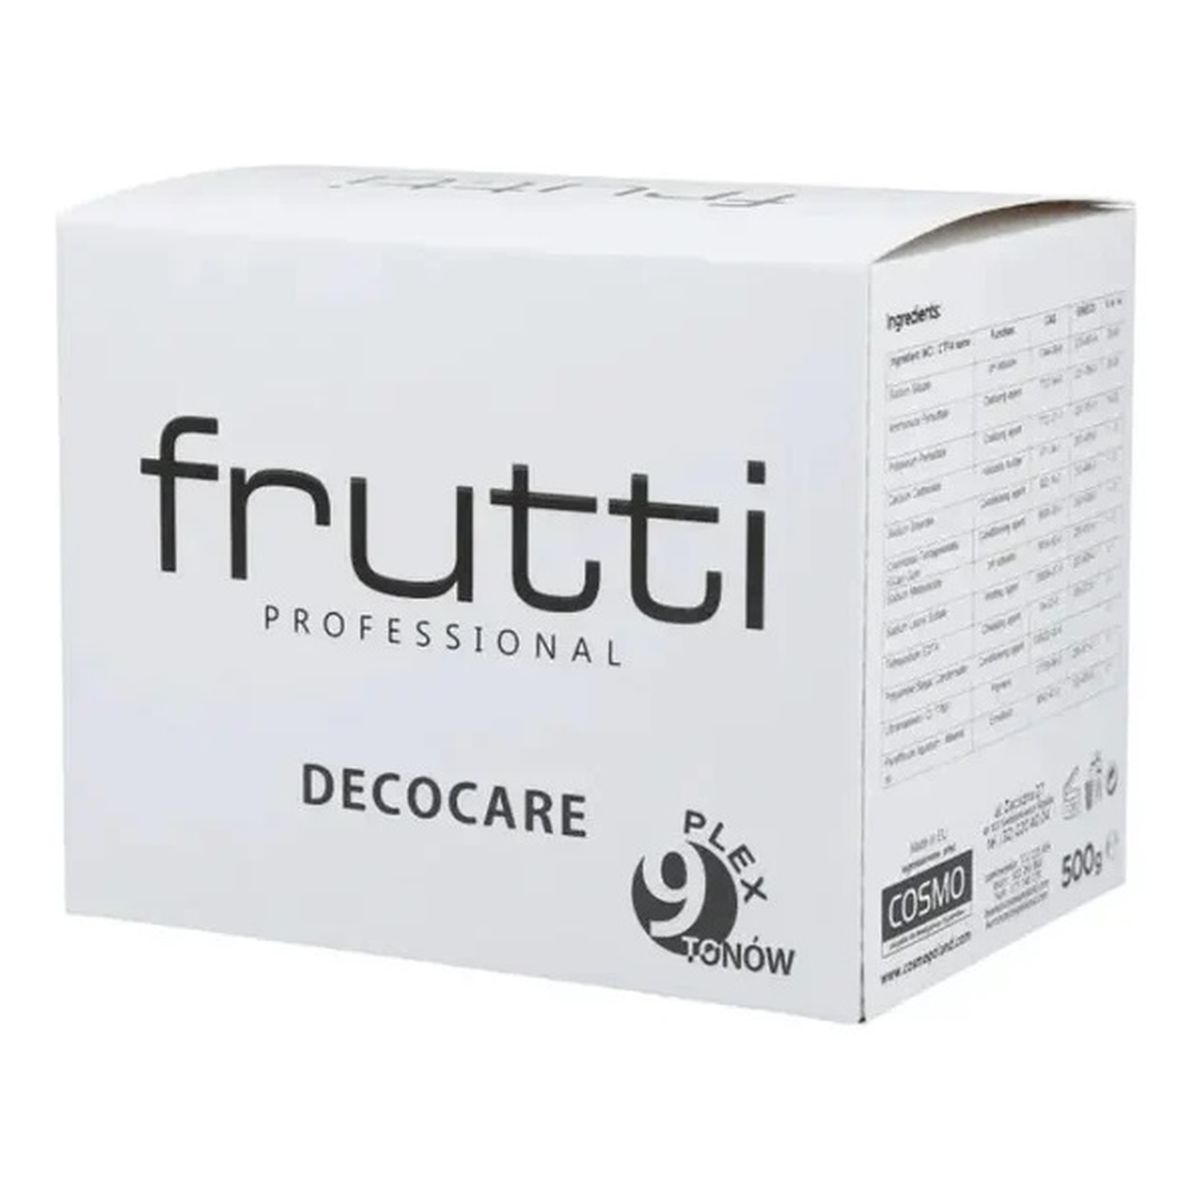 Frutti Professional Decocare plex rozjaśniacz do włosów 9 tonów 500g 500g